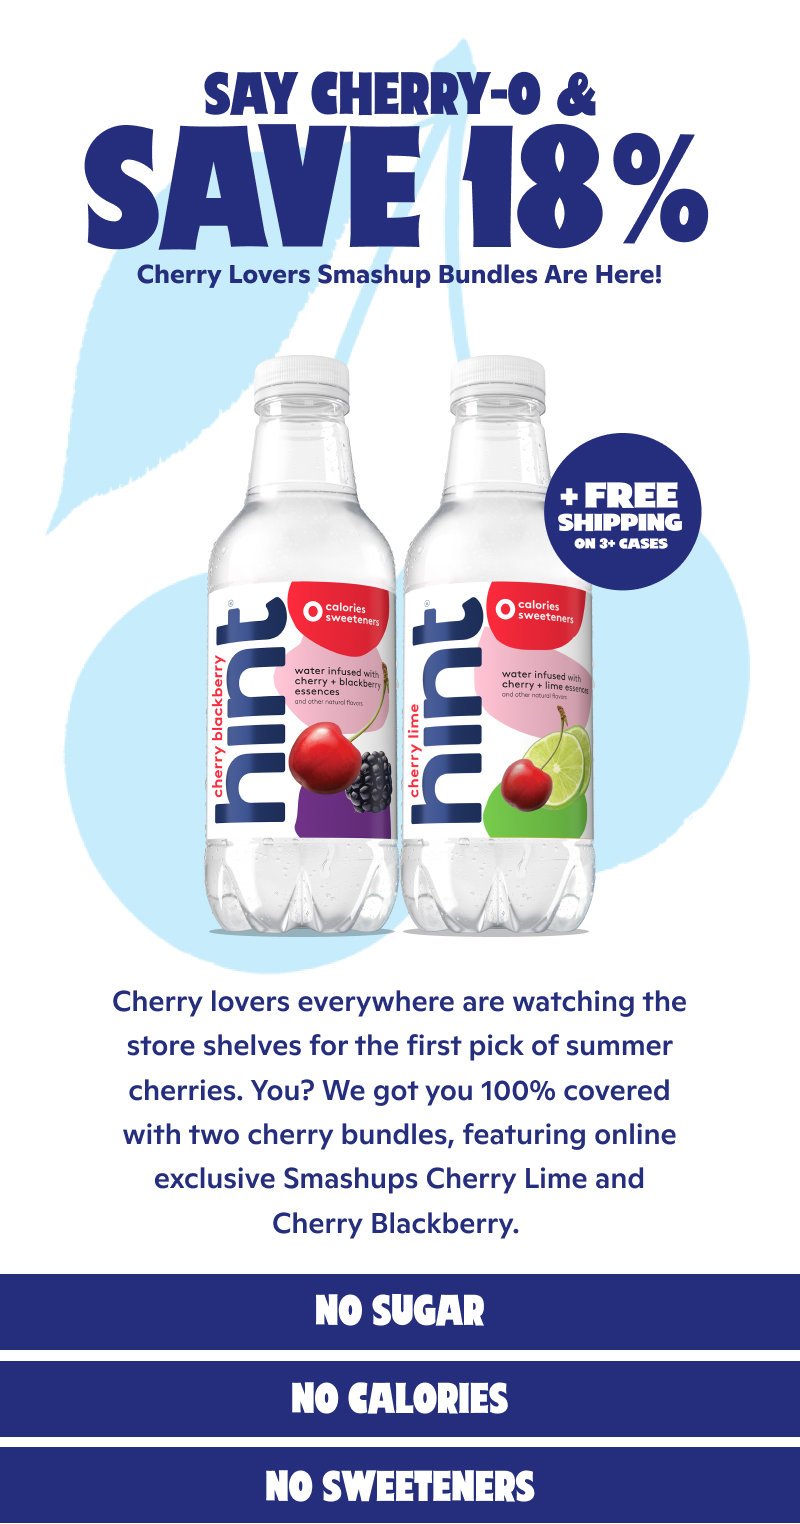 Say Cherry-O & save 18% on Cherry Lovers Smashup Bundles!